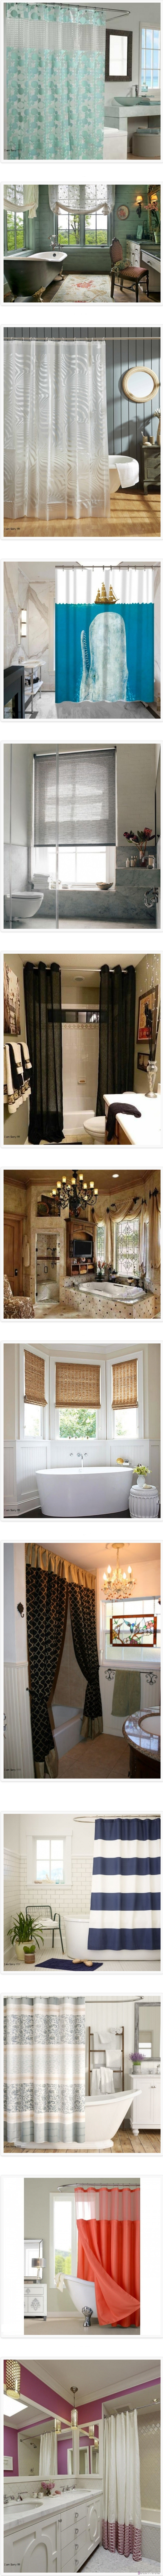 تصاميم ستائر الحمام المودرن الرائعة بالصور لتجديد ديكورات الحمام وتنسيقها